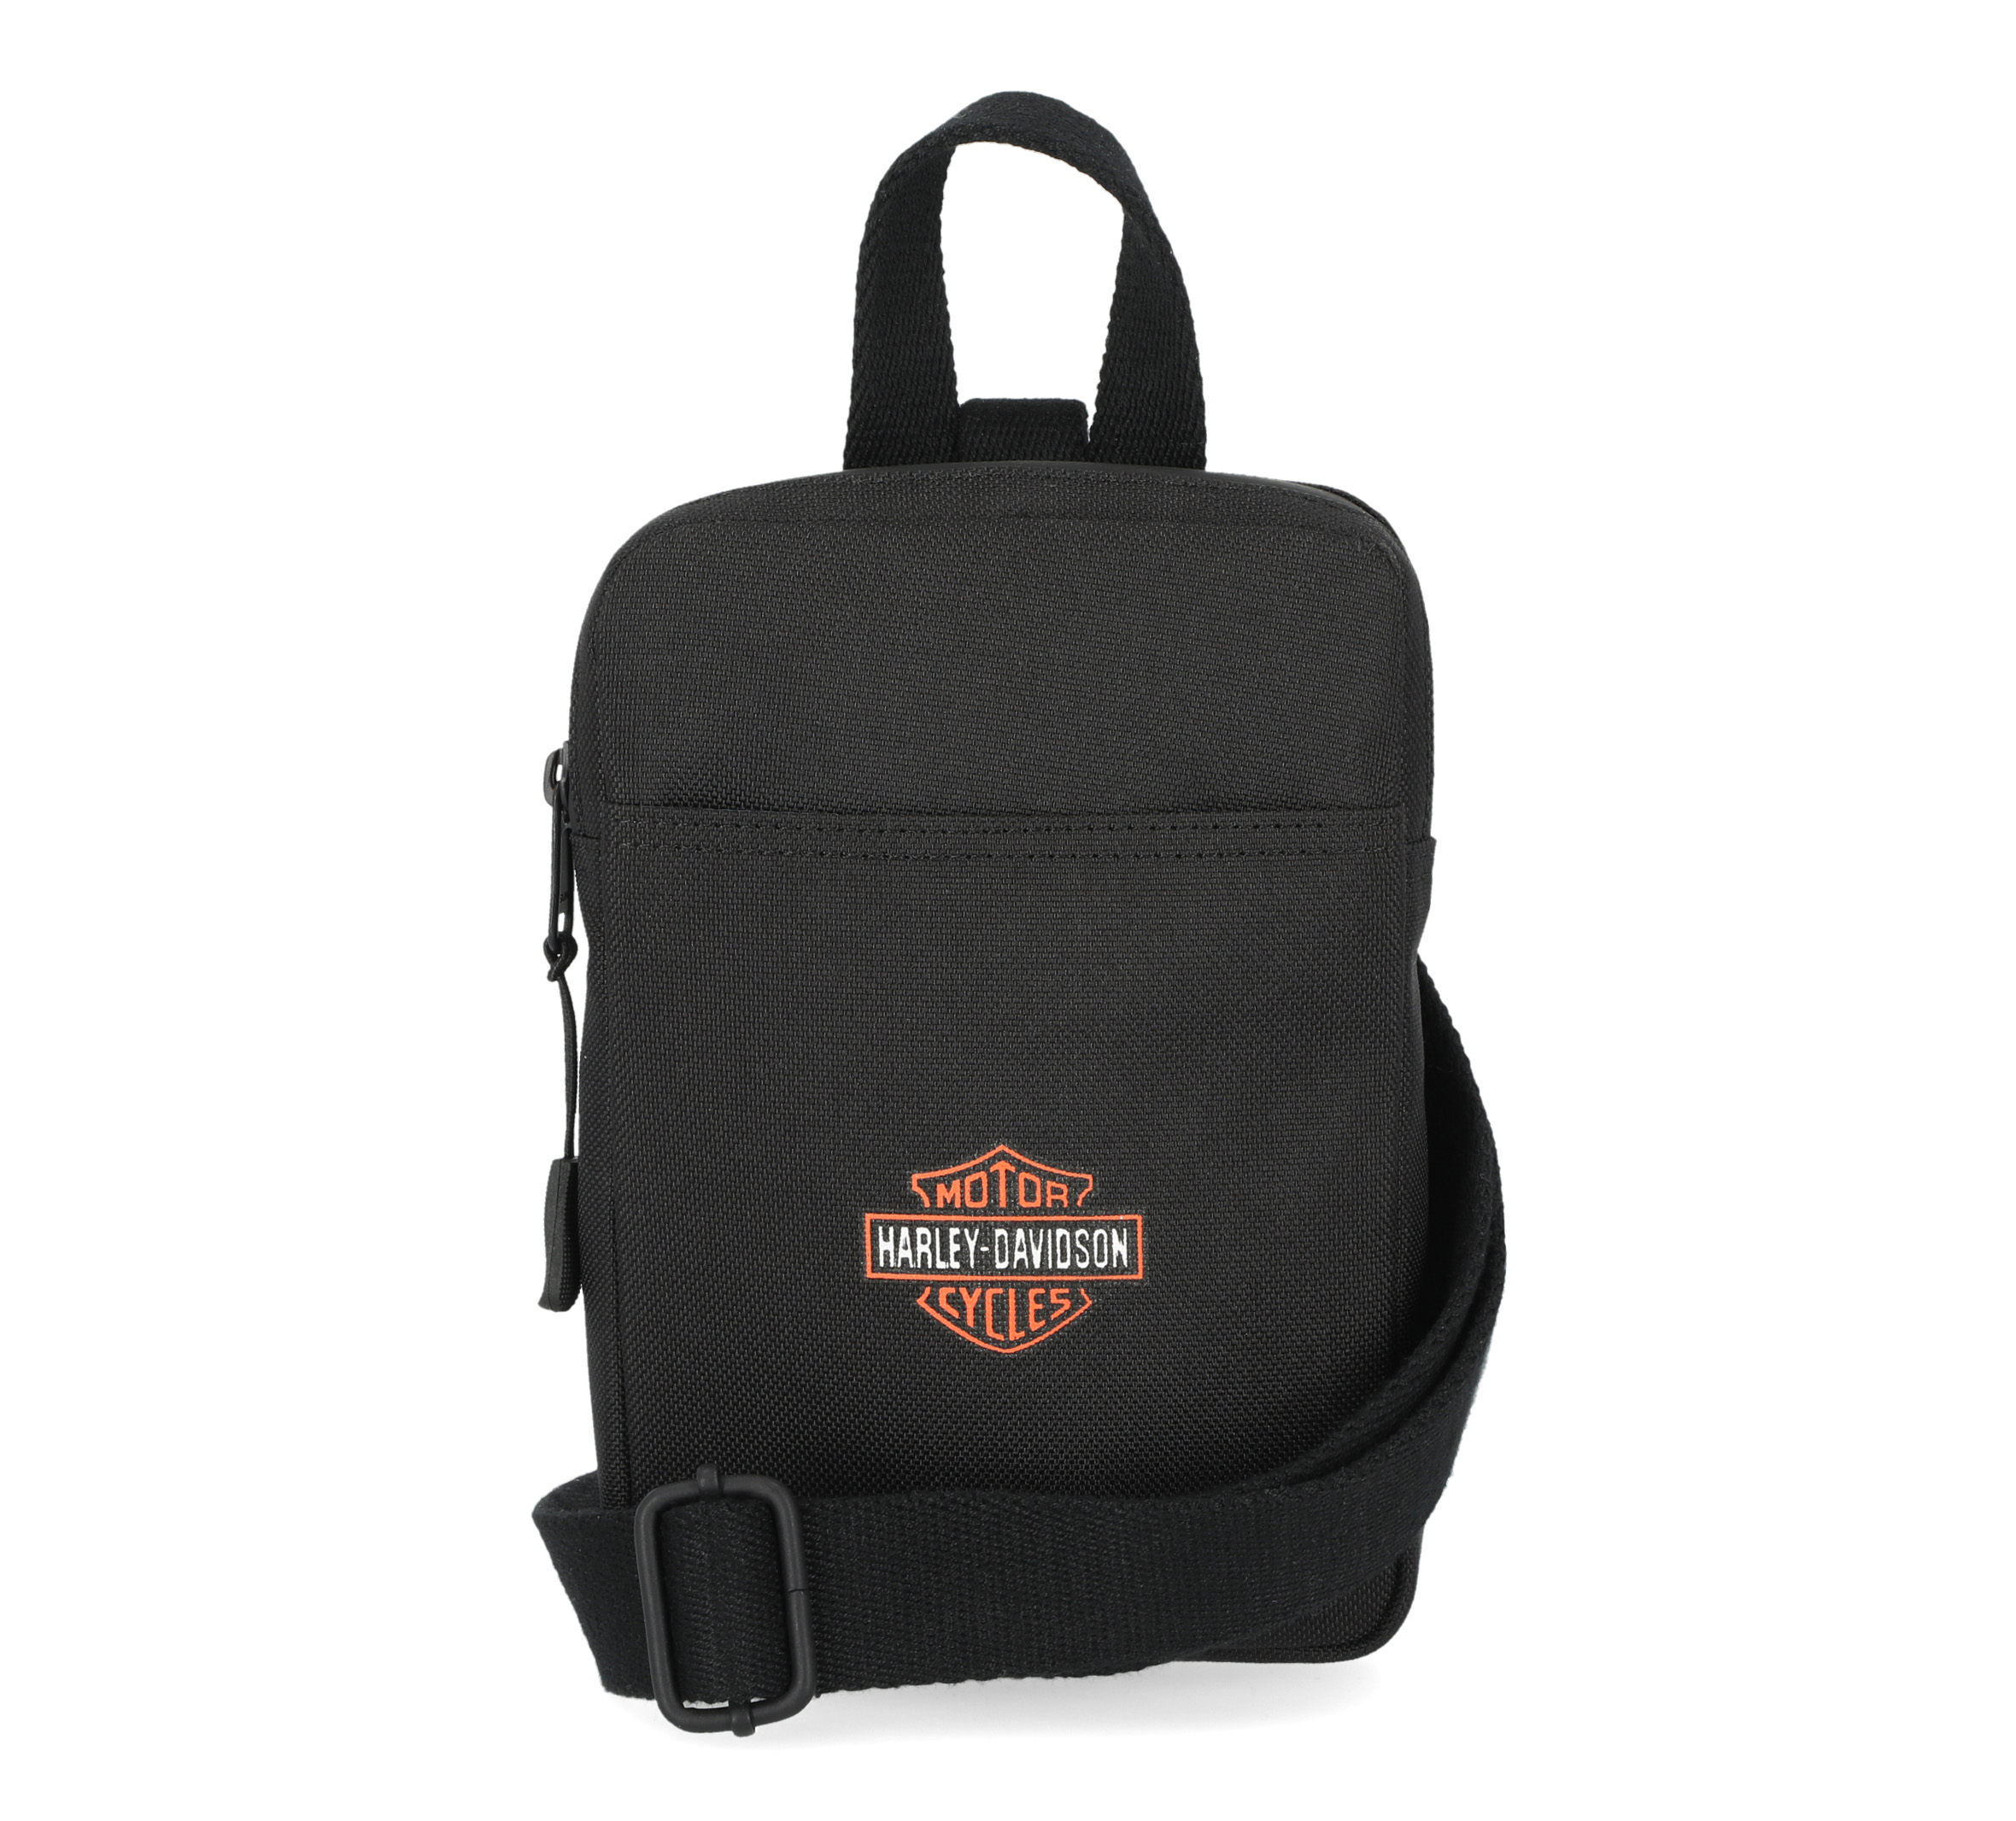 Pre-Loved Black Harley Davidson Over the Shoulder Bag / Diaper Bag